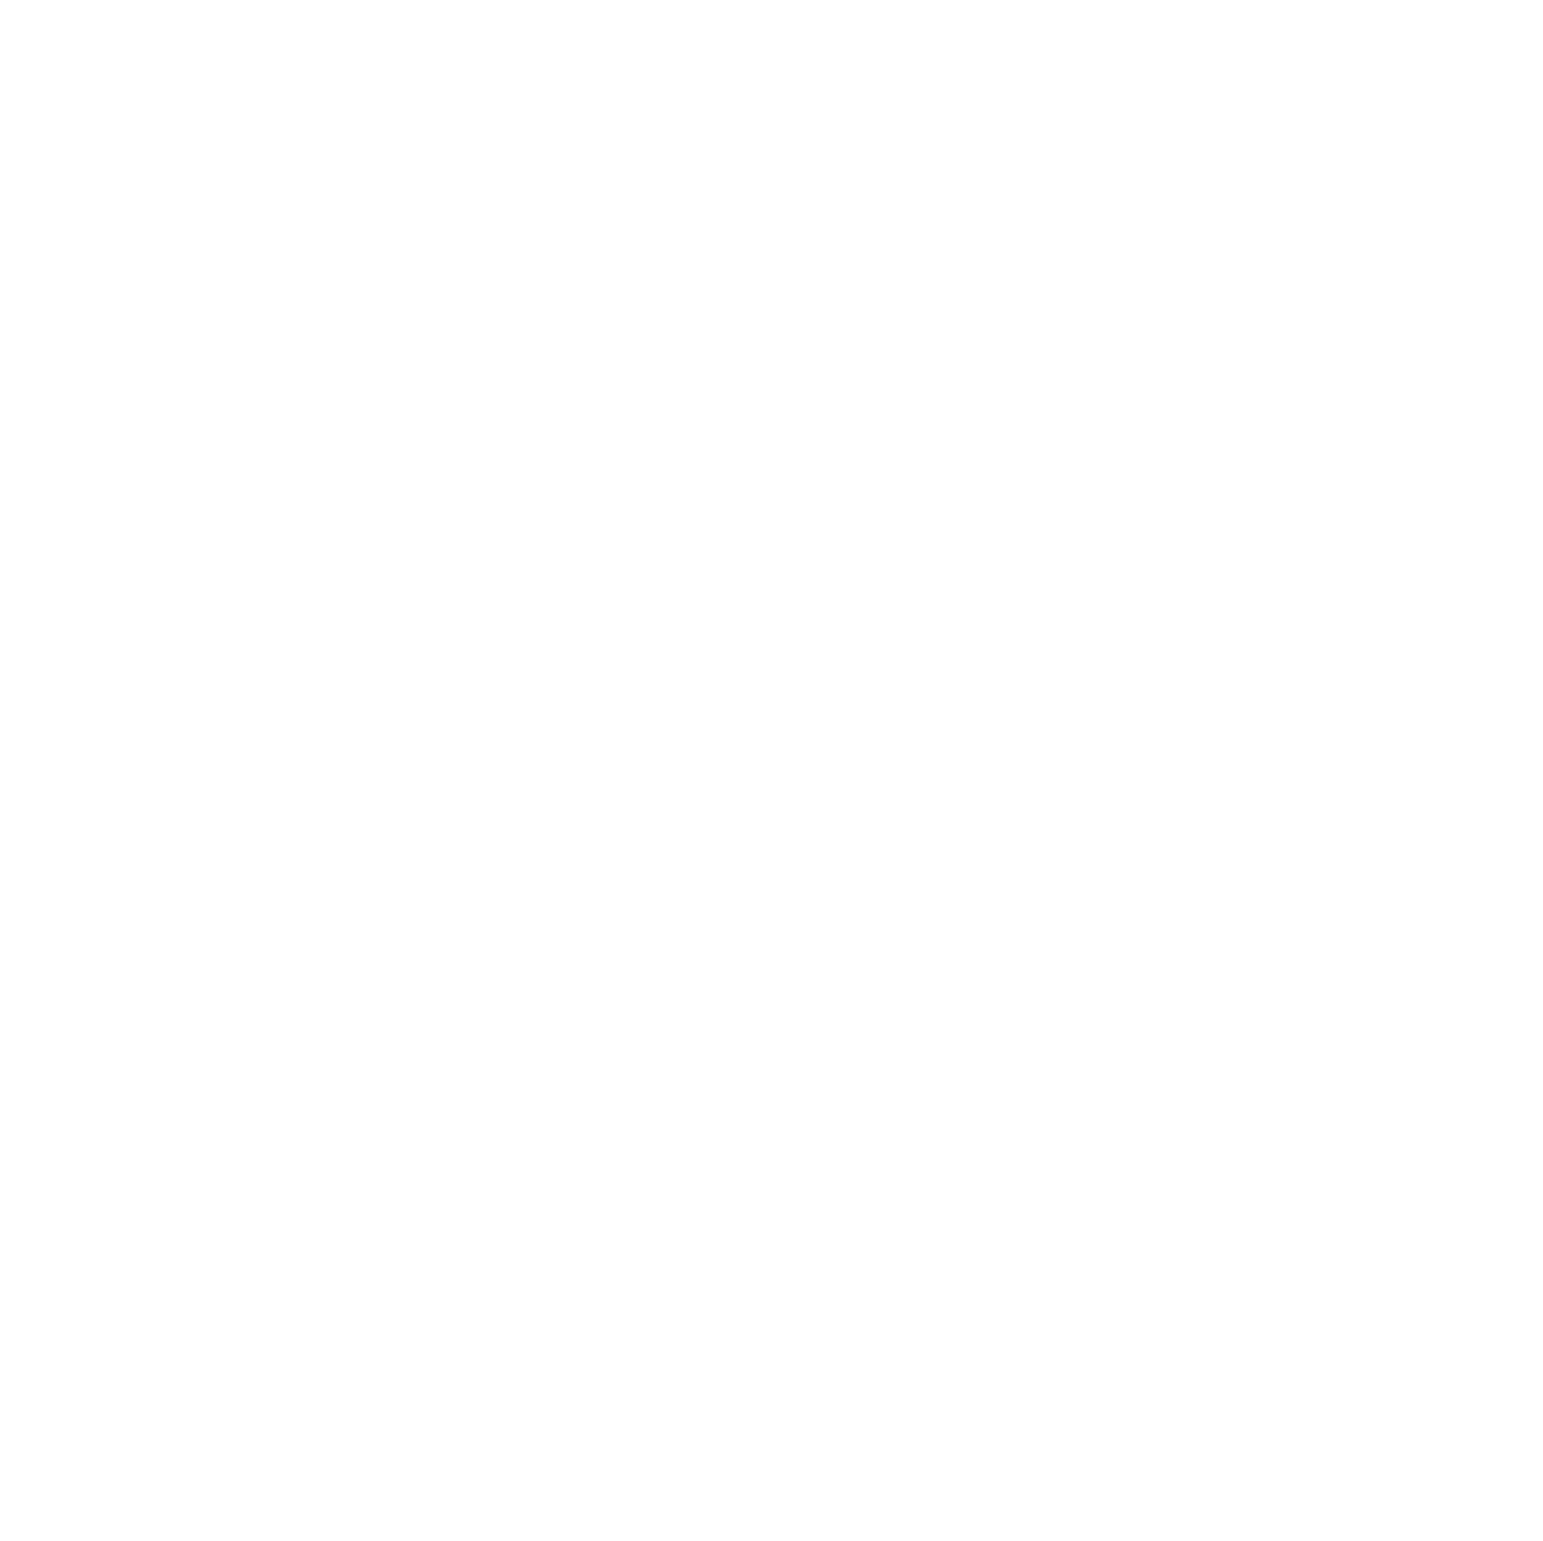 Emcor logo for dark backgrounds (transparent PNG)